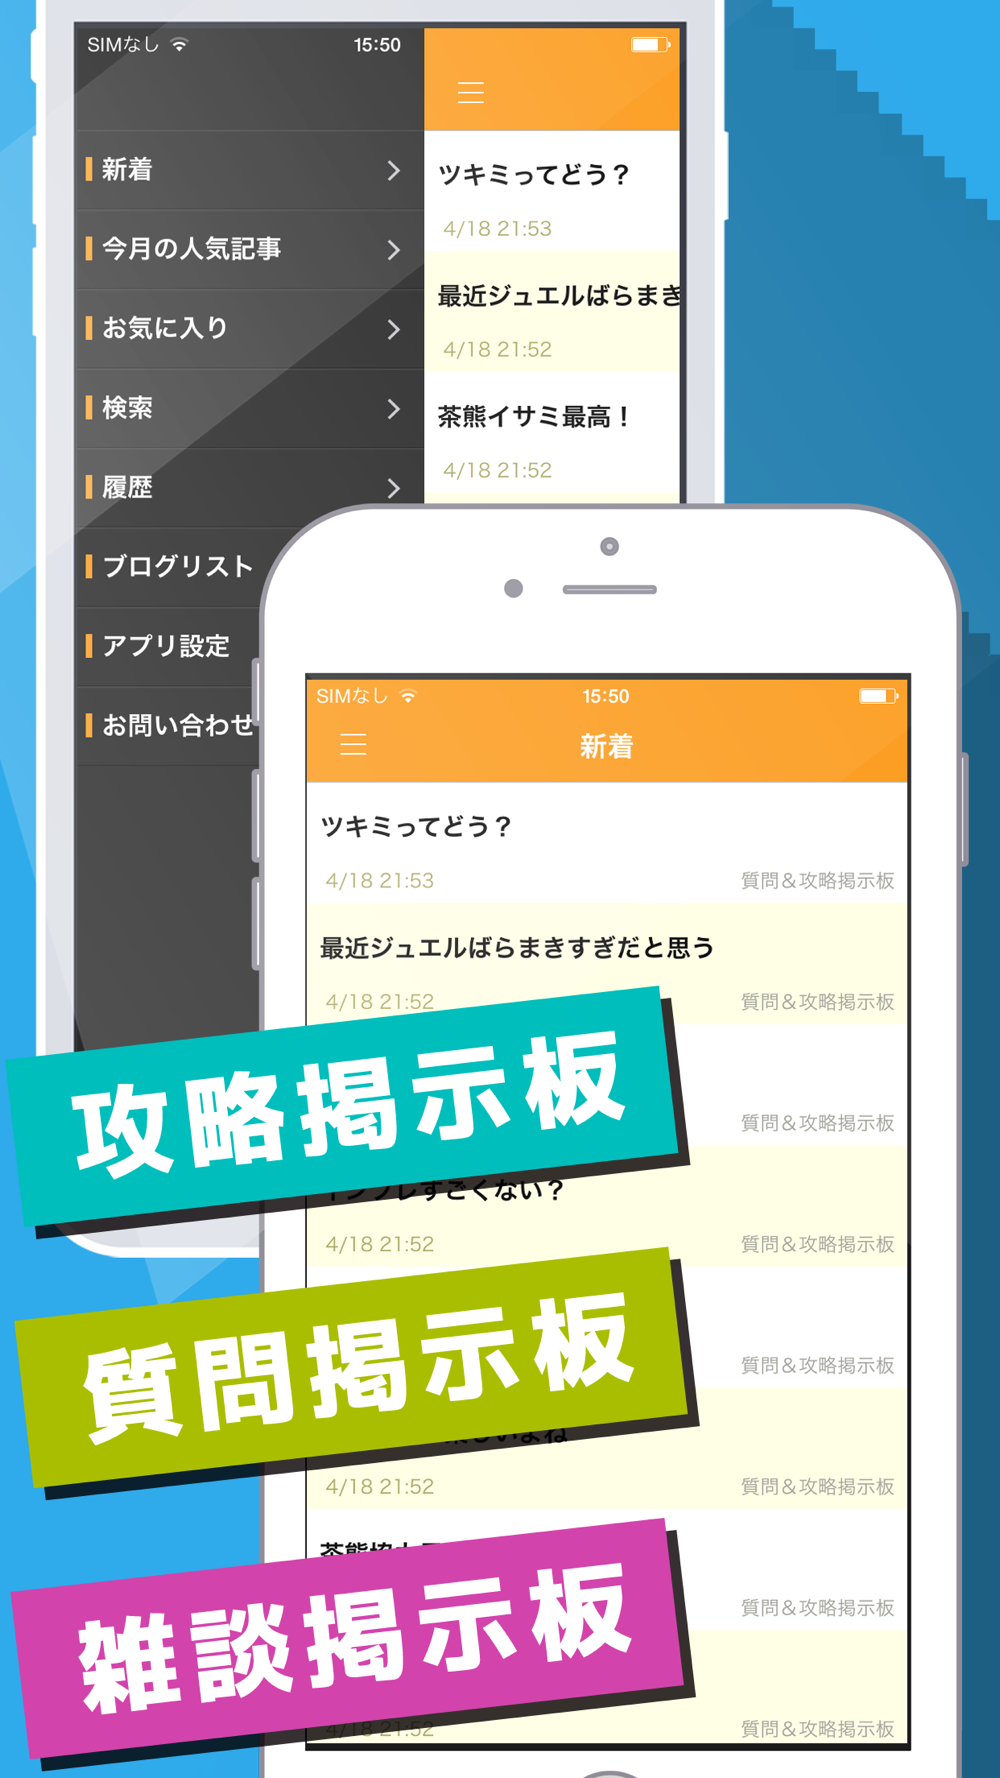 白猫協力バトル掲示板 For 白猫プロジェクト 白プロ Free Download App For Iphone Steprimo Com